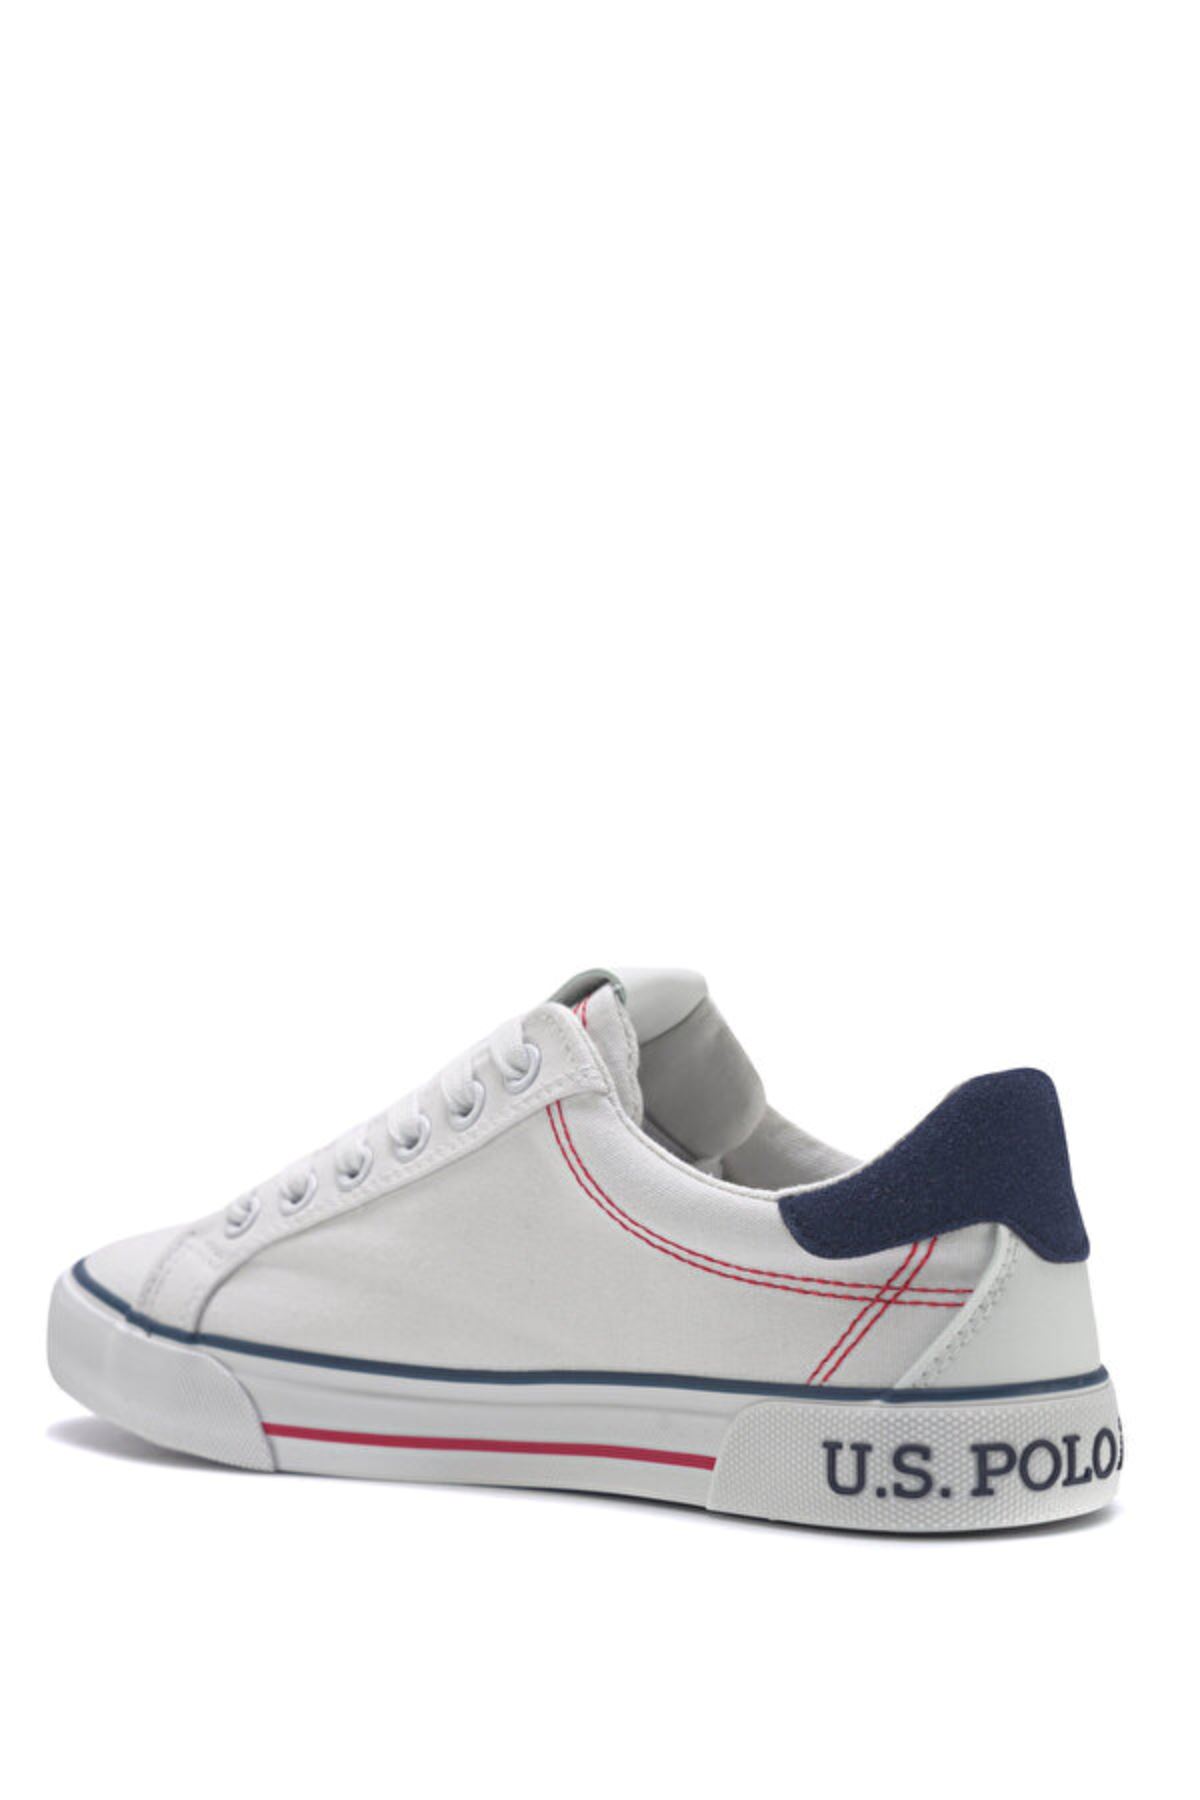 Rachel 3Fx U.S. Polo Assn. Kadın Beyaz Spor Ayakkabı - 101341068